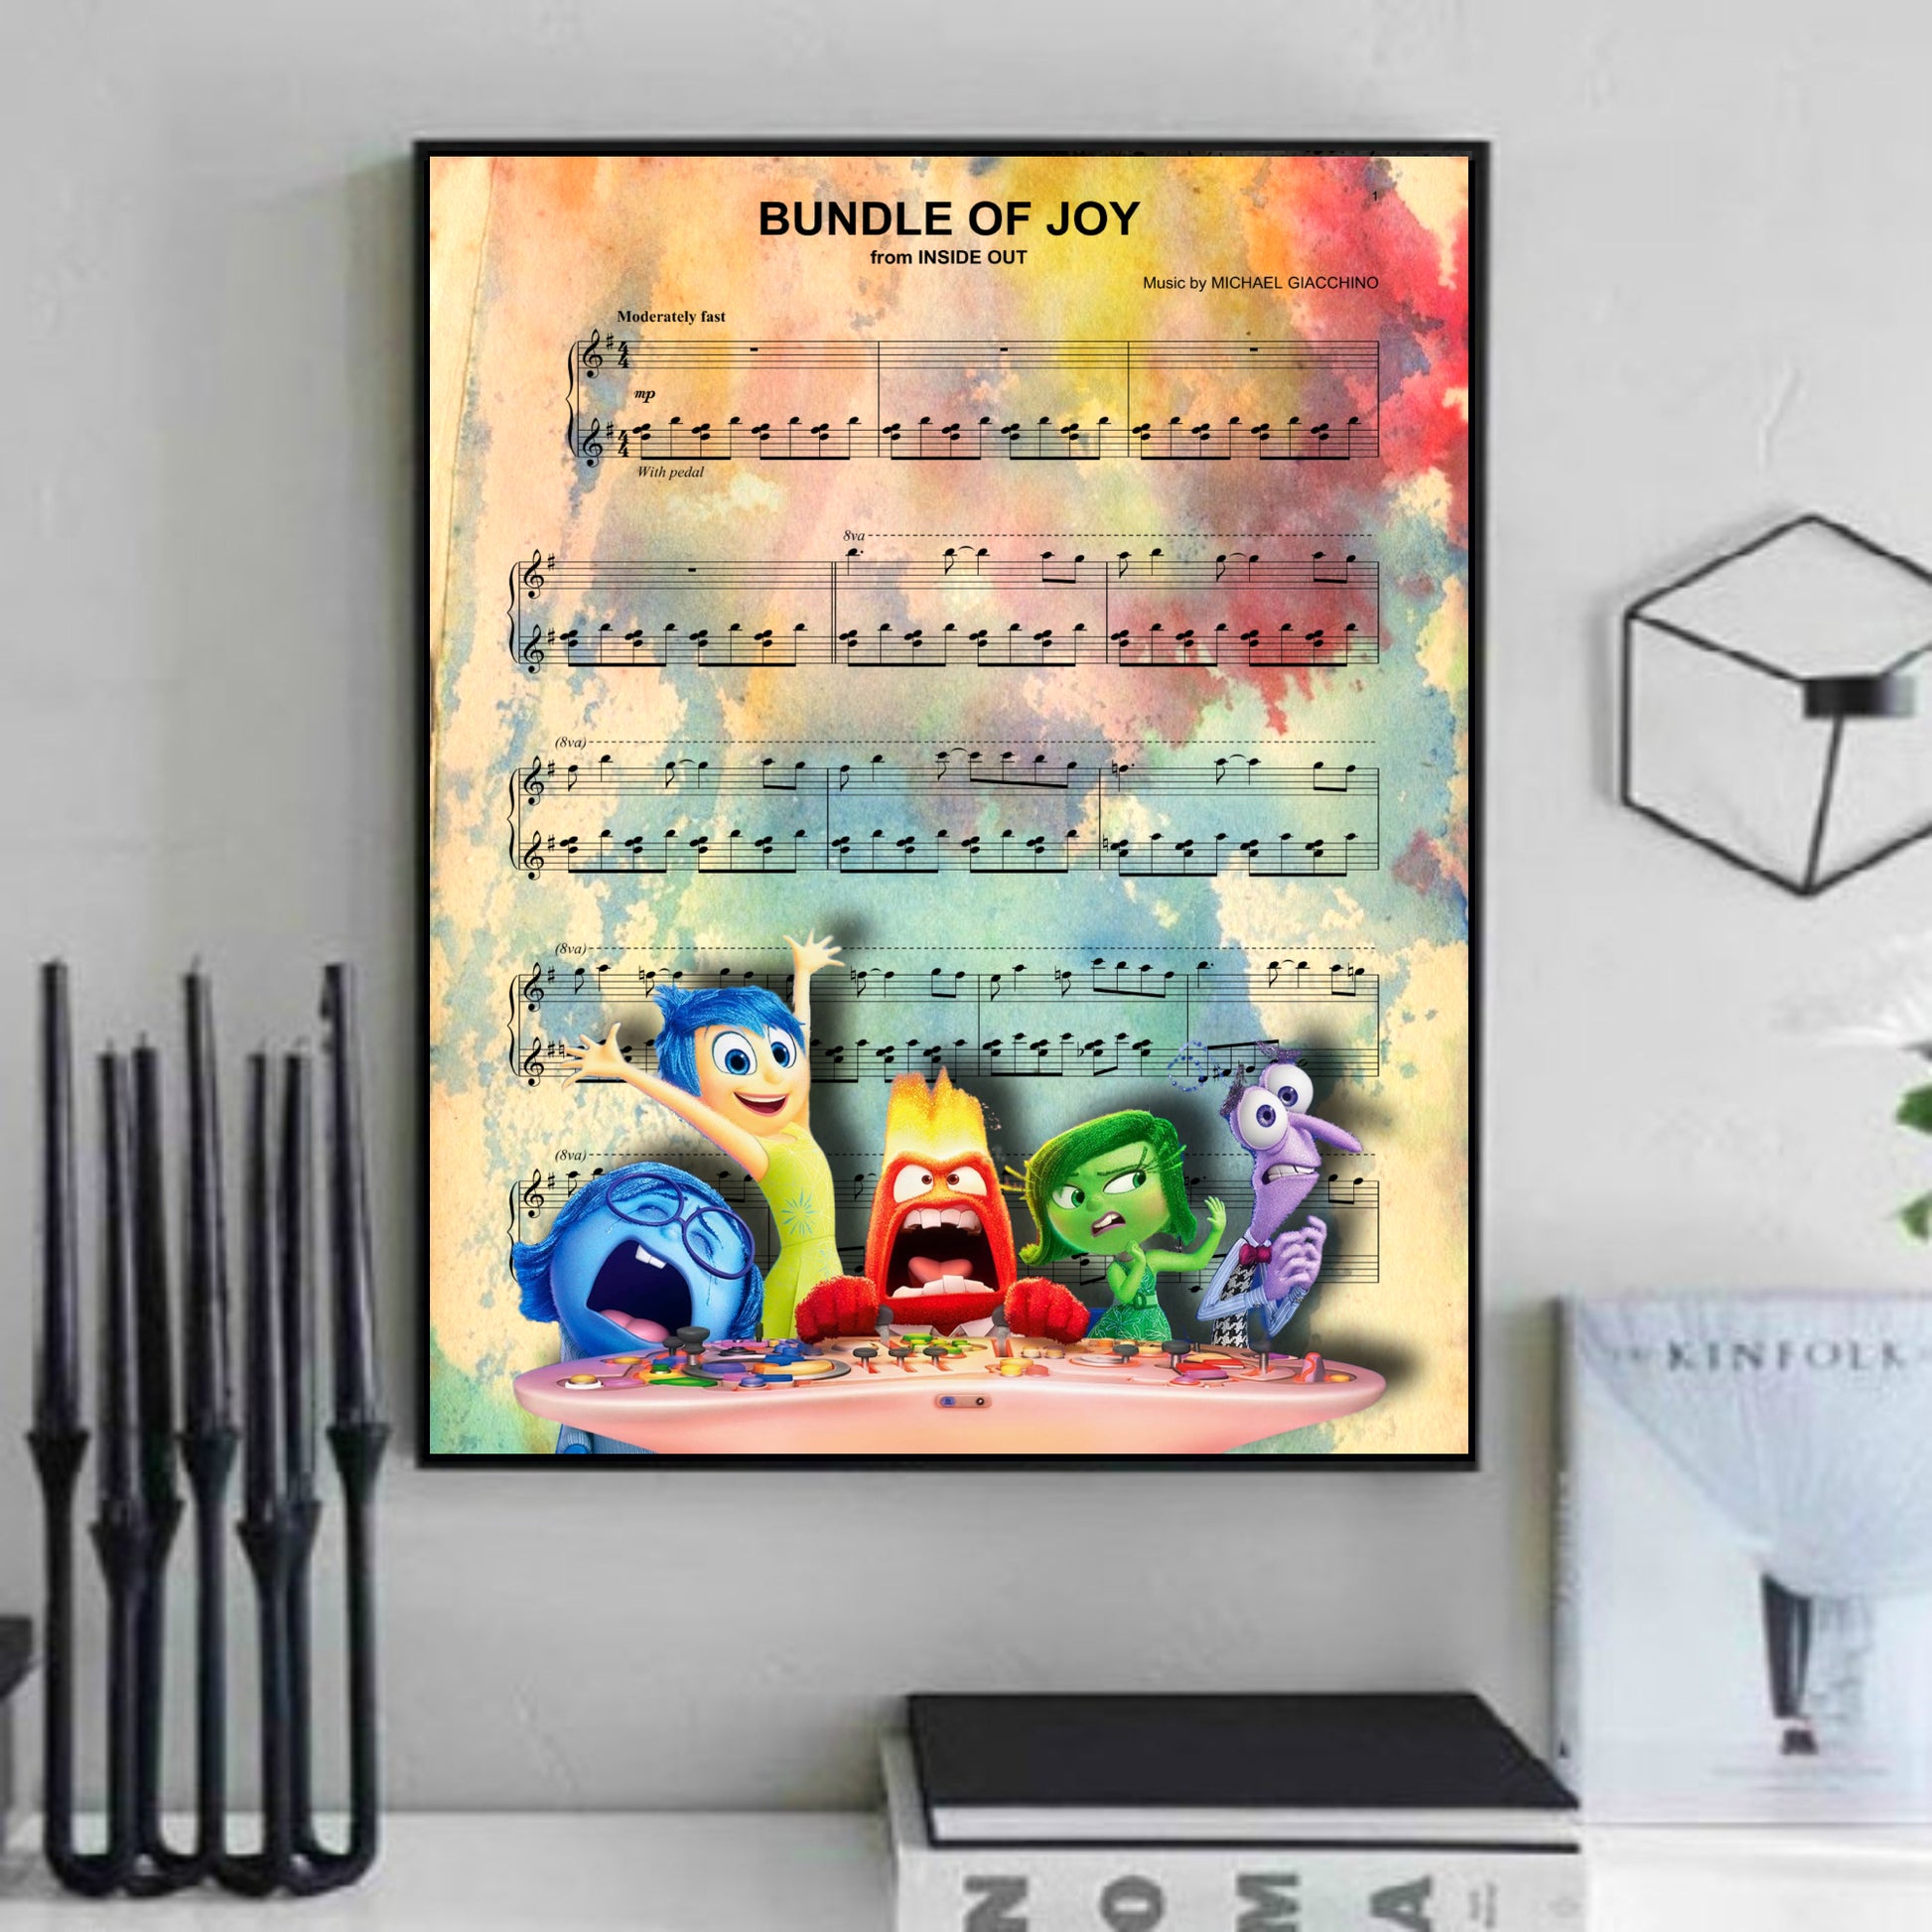 Inside Out Disney art artwork print gift